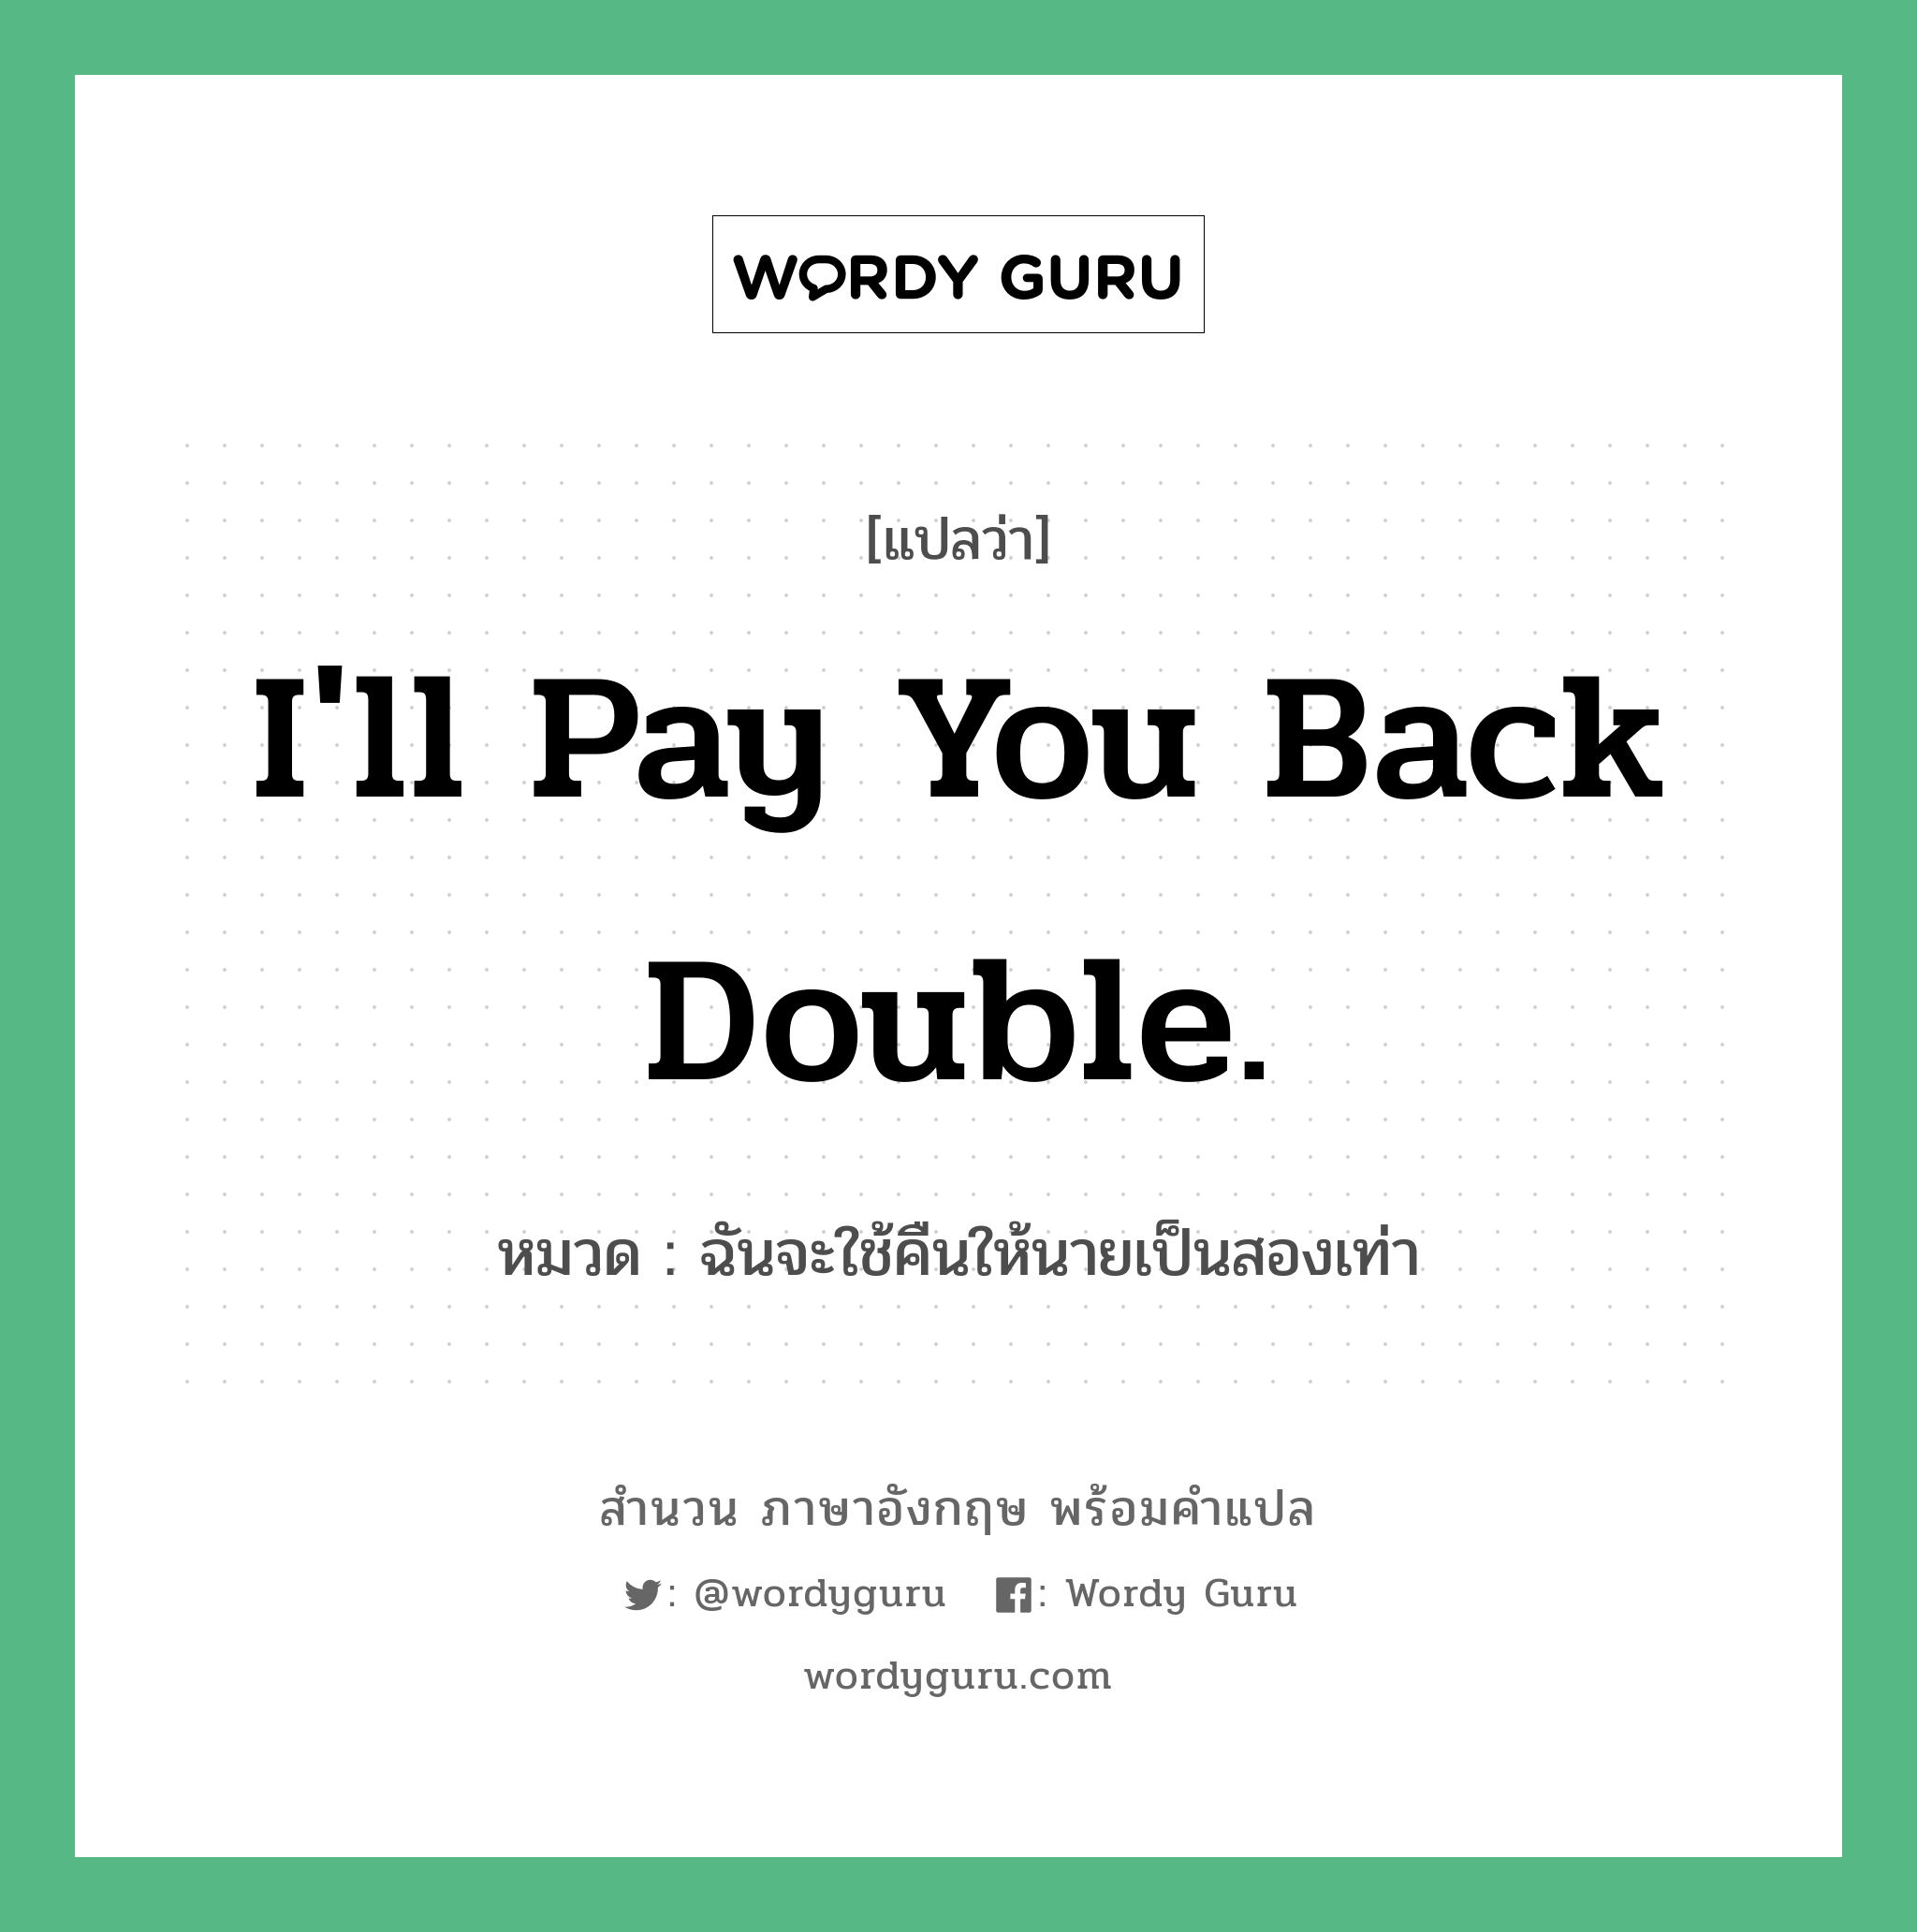 I'll pay you back double. แปลว่า?, สำนวนภาษาอังกฤษ I'll pay you back double. หมวด ฉันจะใช้คืนให้นายเป็นสองเท่า